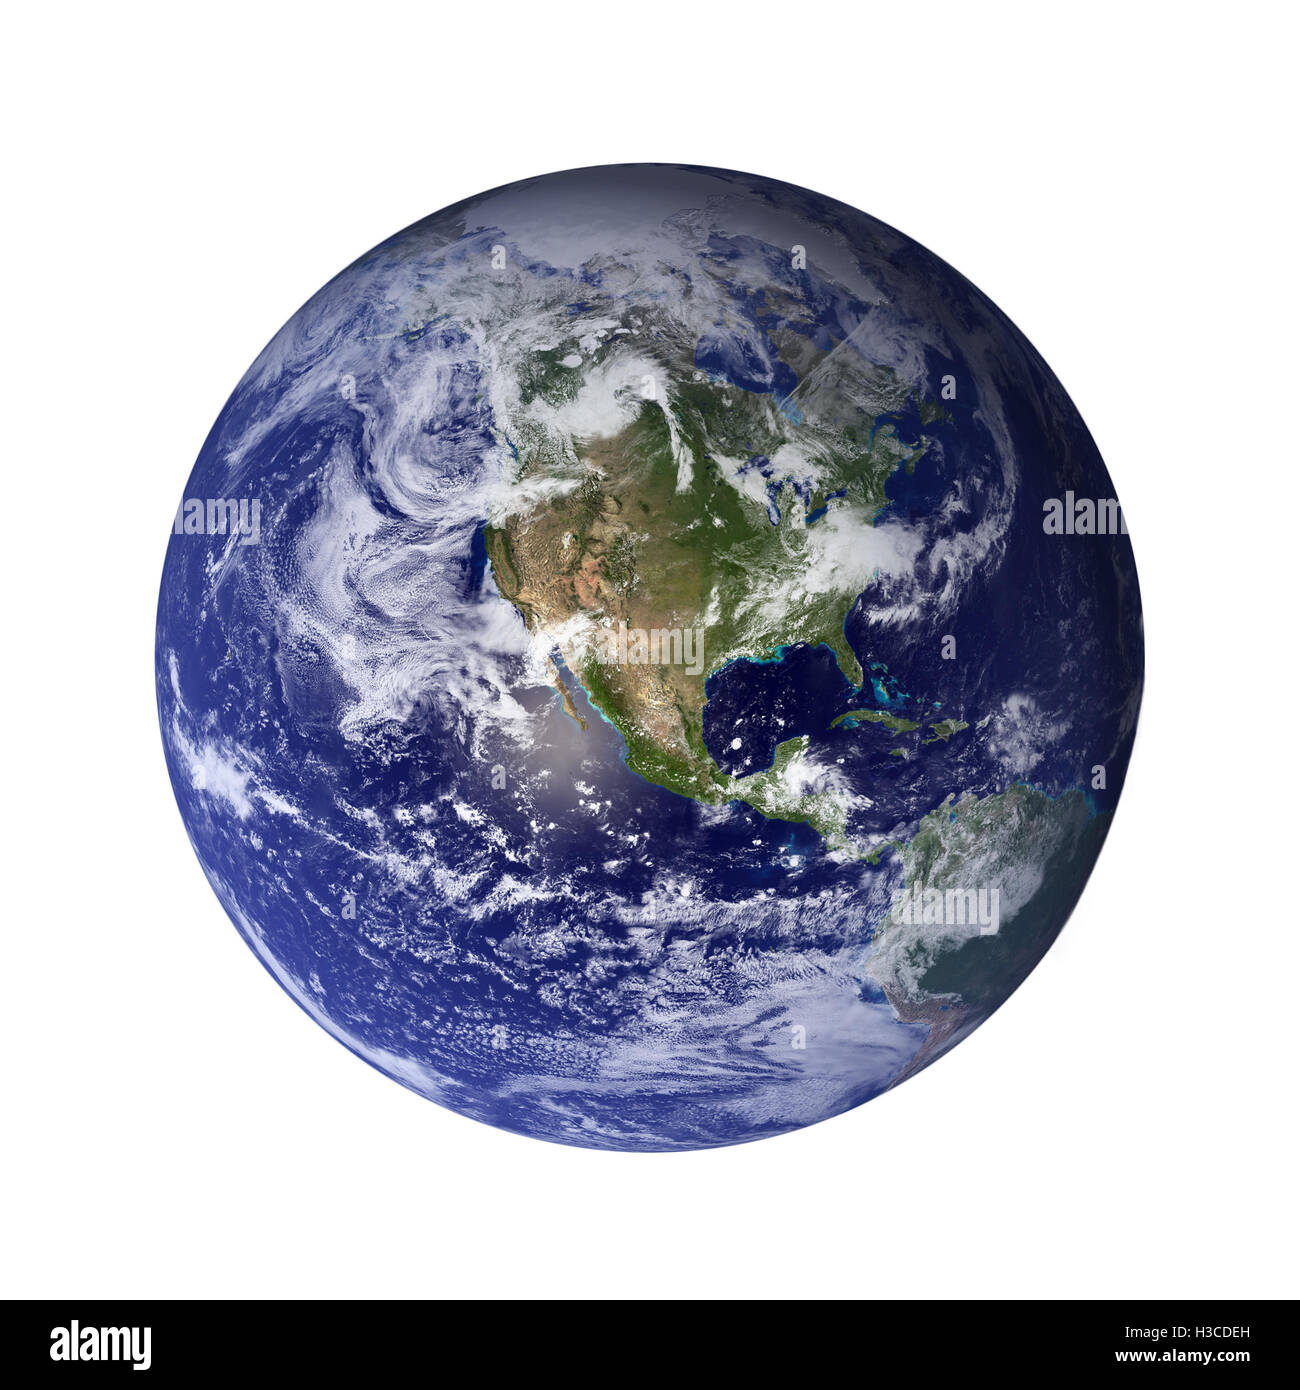 Sonnensystem - Erde. Isolierten Planeten auf weißem Hintergrund. Elemente dieses Bildes, eingerichtet von der NASA Stockfoto